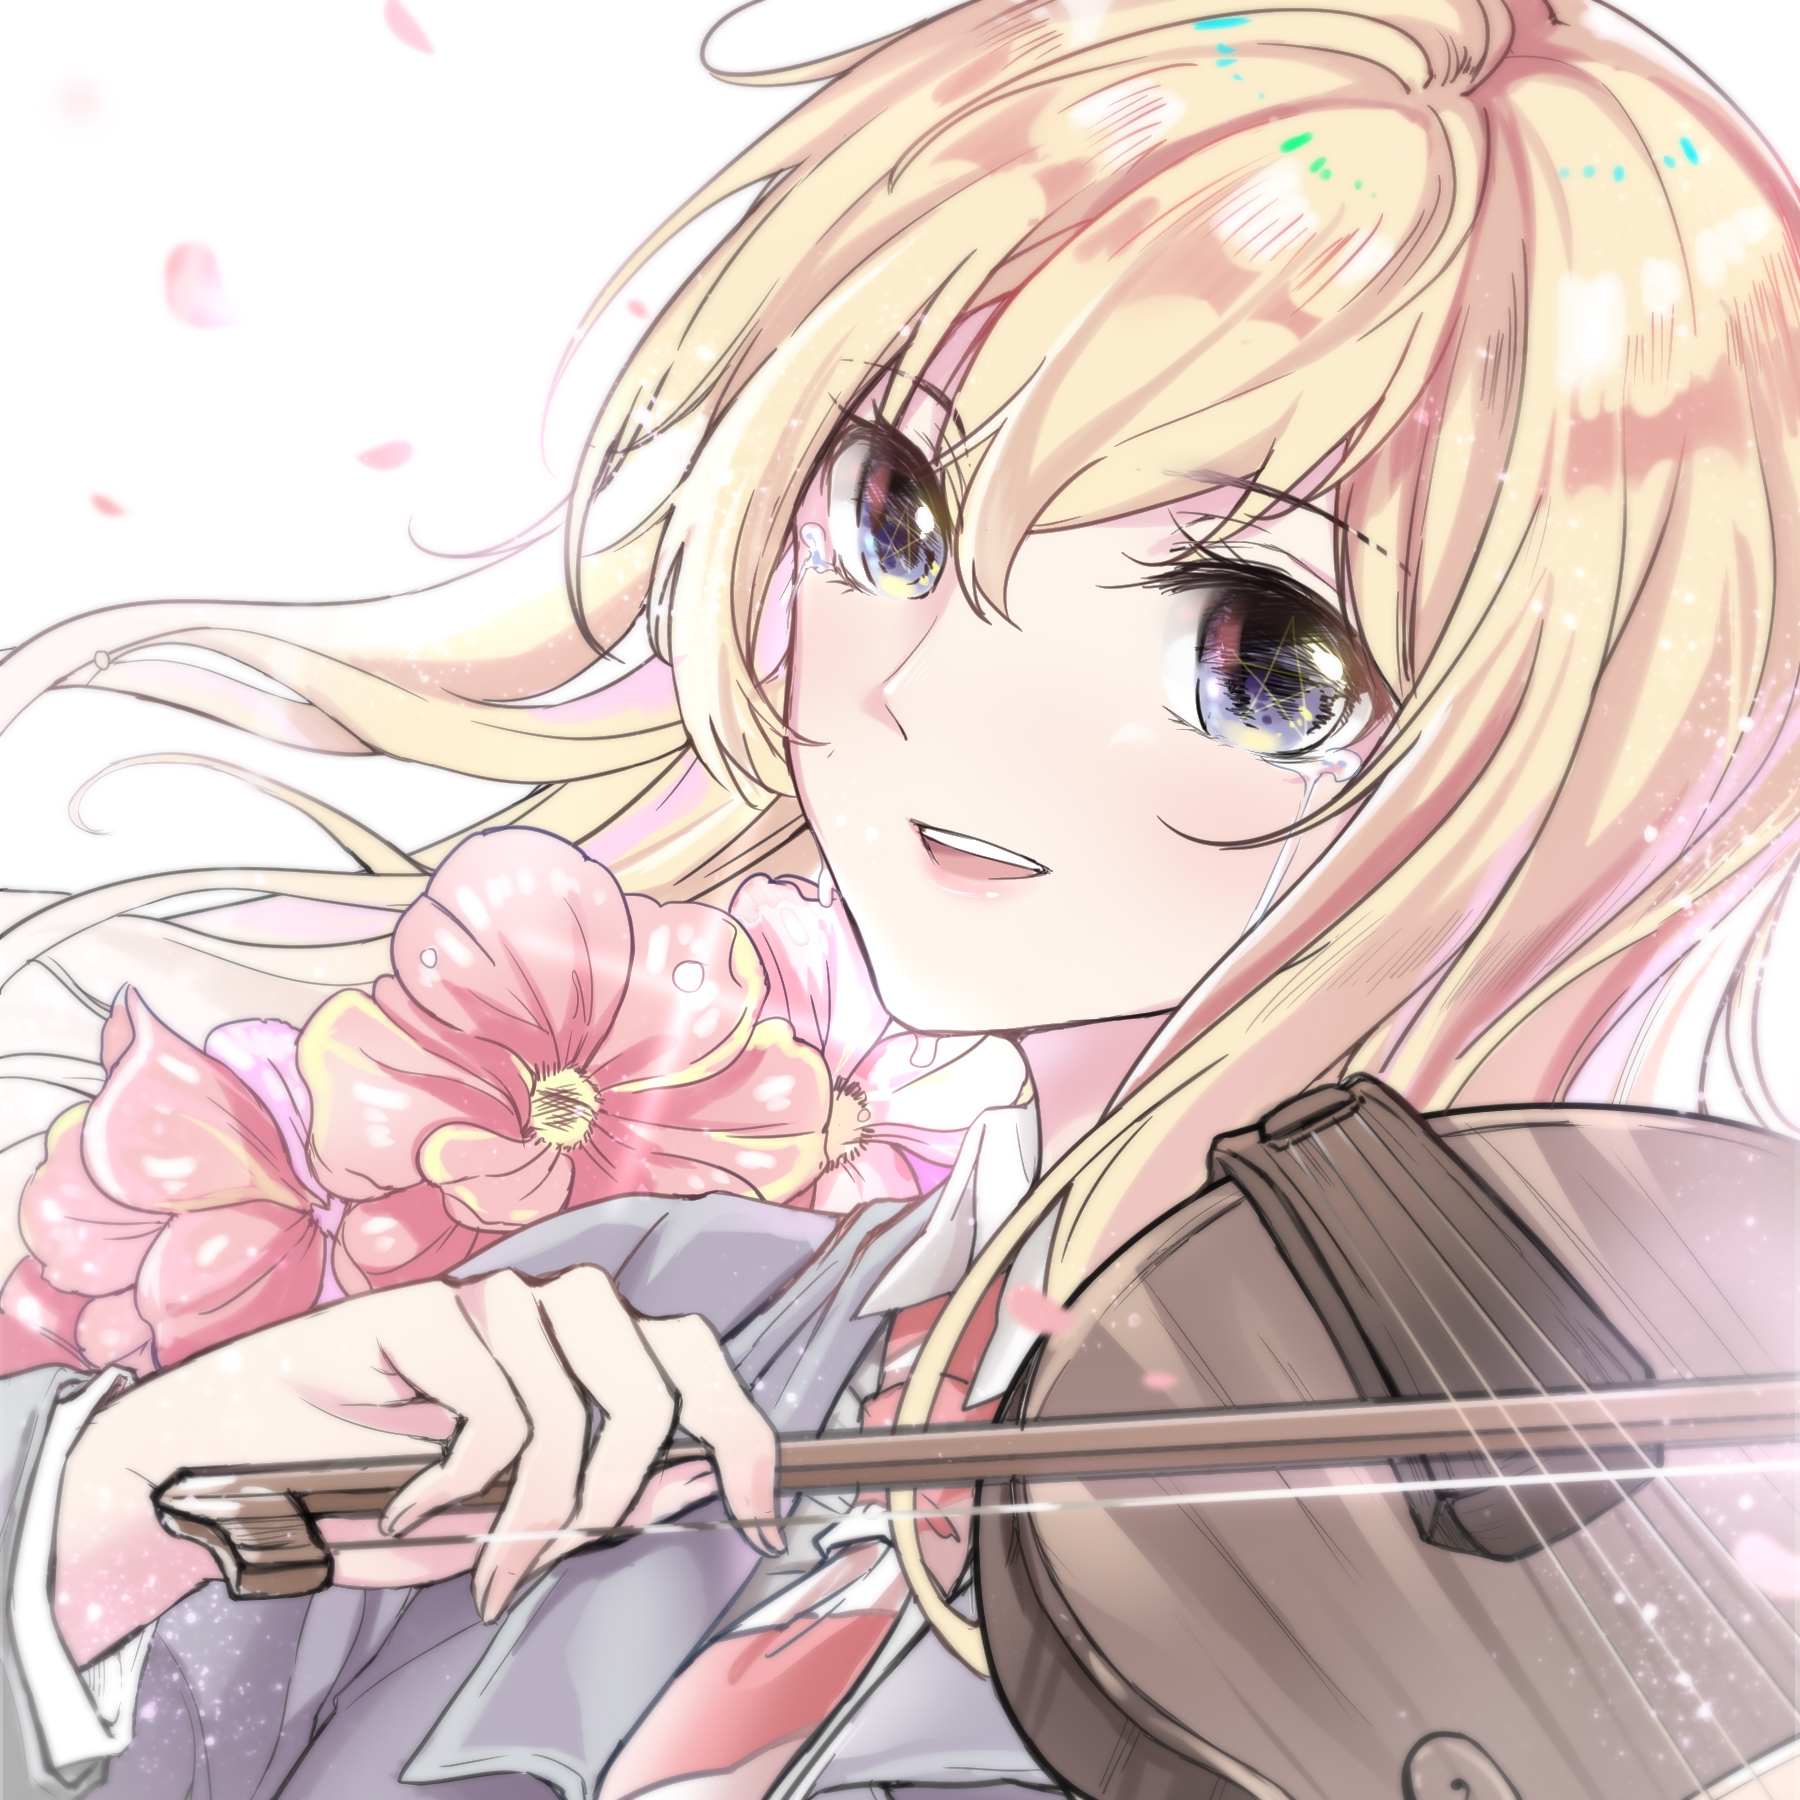 Anime 1800x1800 Shigatsu wa Kimi no Uso Miyazono Kaori crying flowers school uniform violin anime blonde anime girls